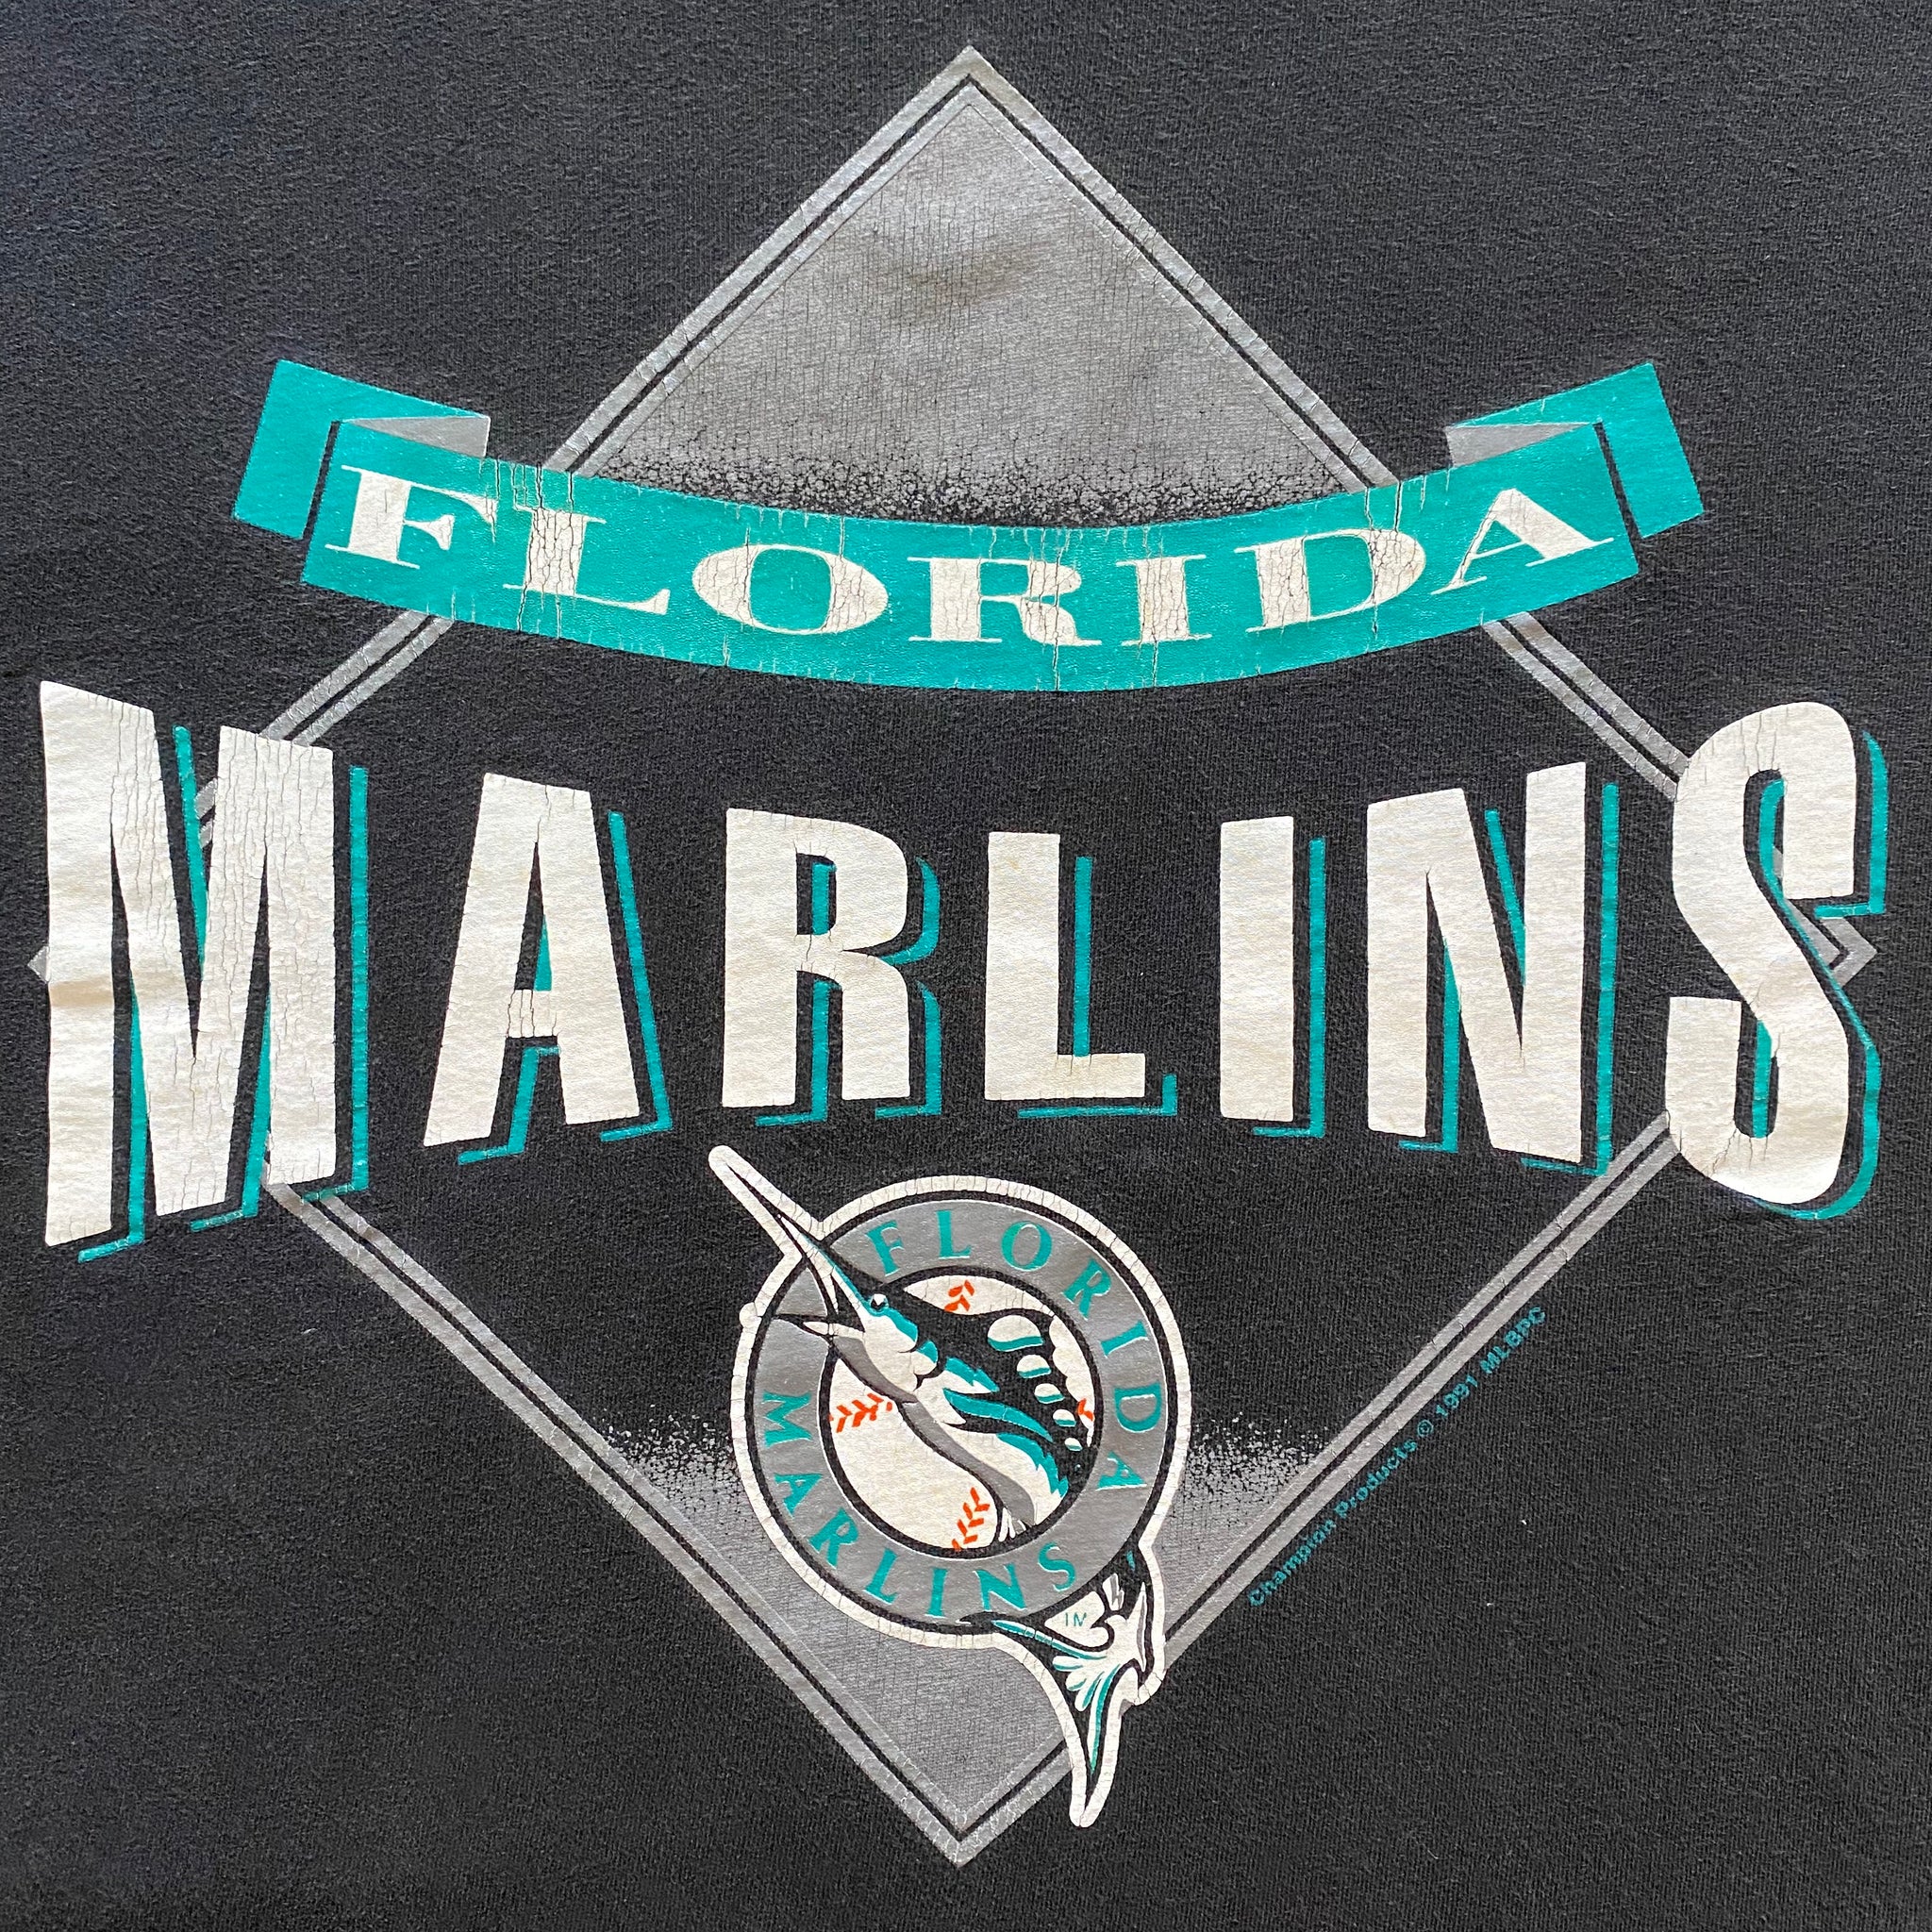 Florida Marlins 1994 T-Shirt Vintage 90's Team Photo - Tarks Tees